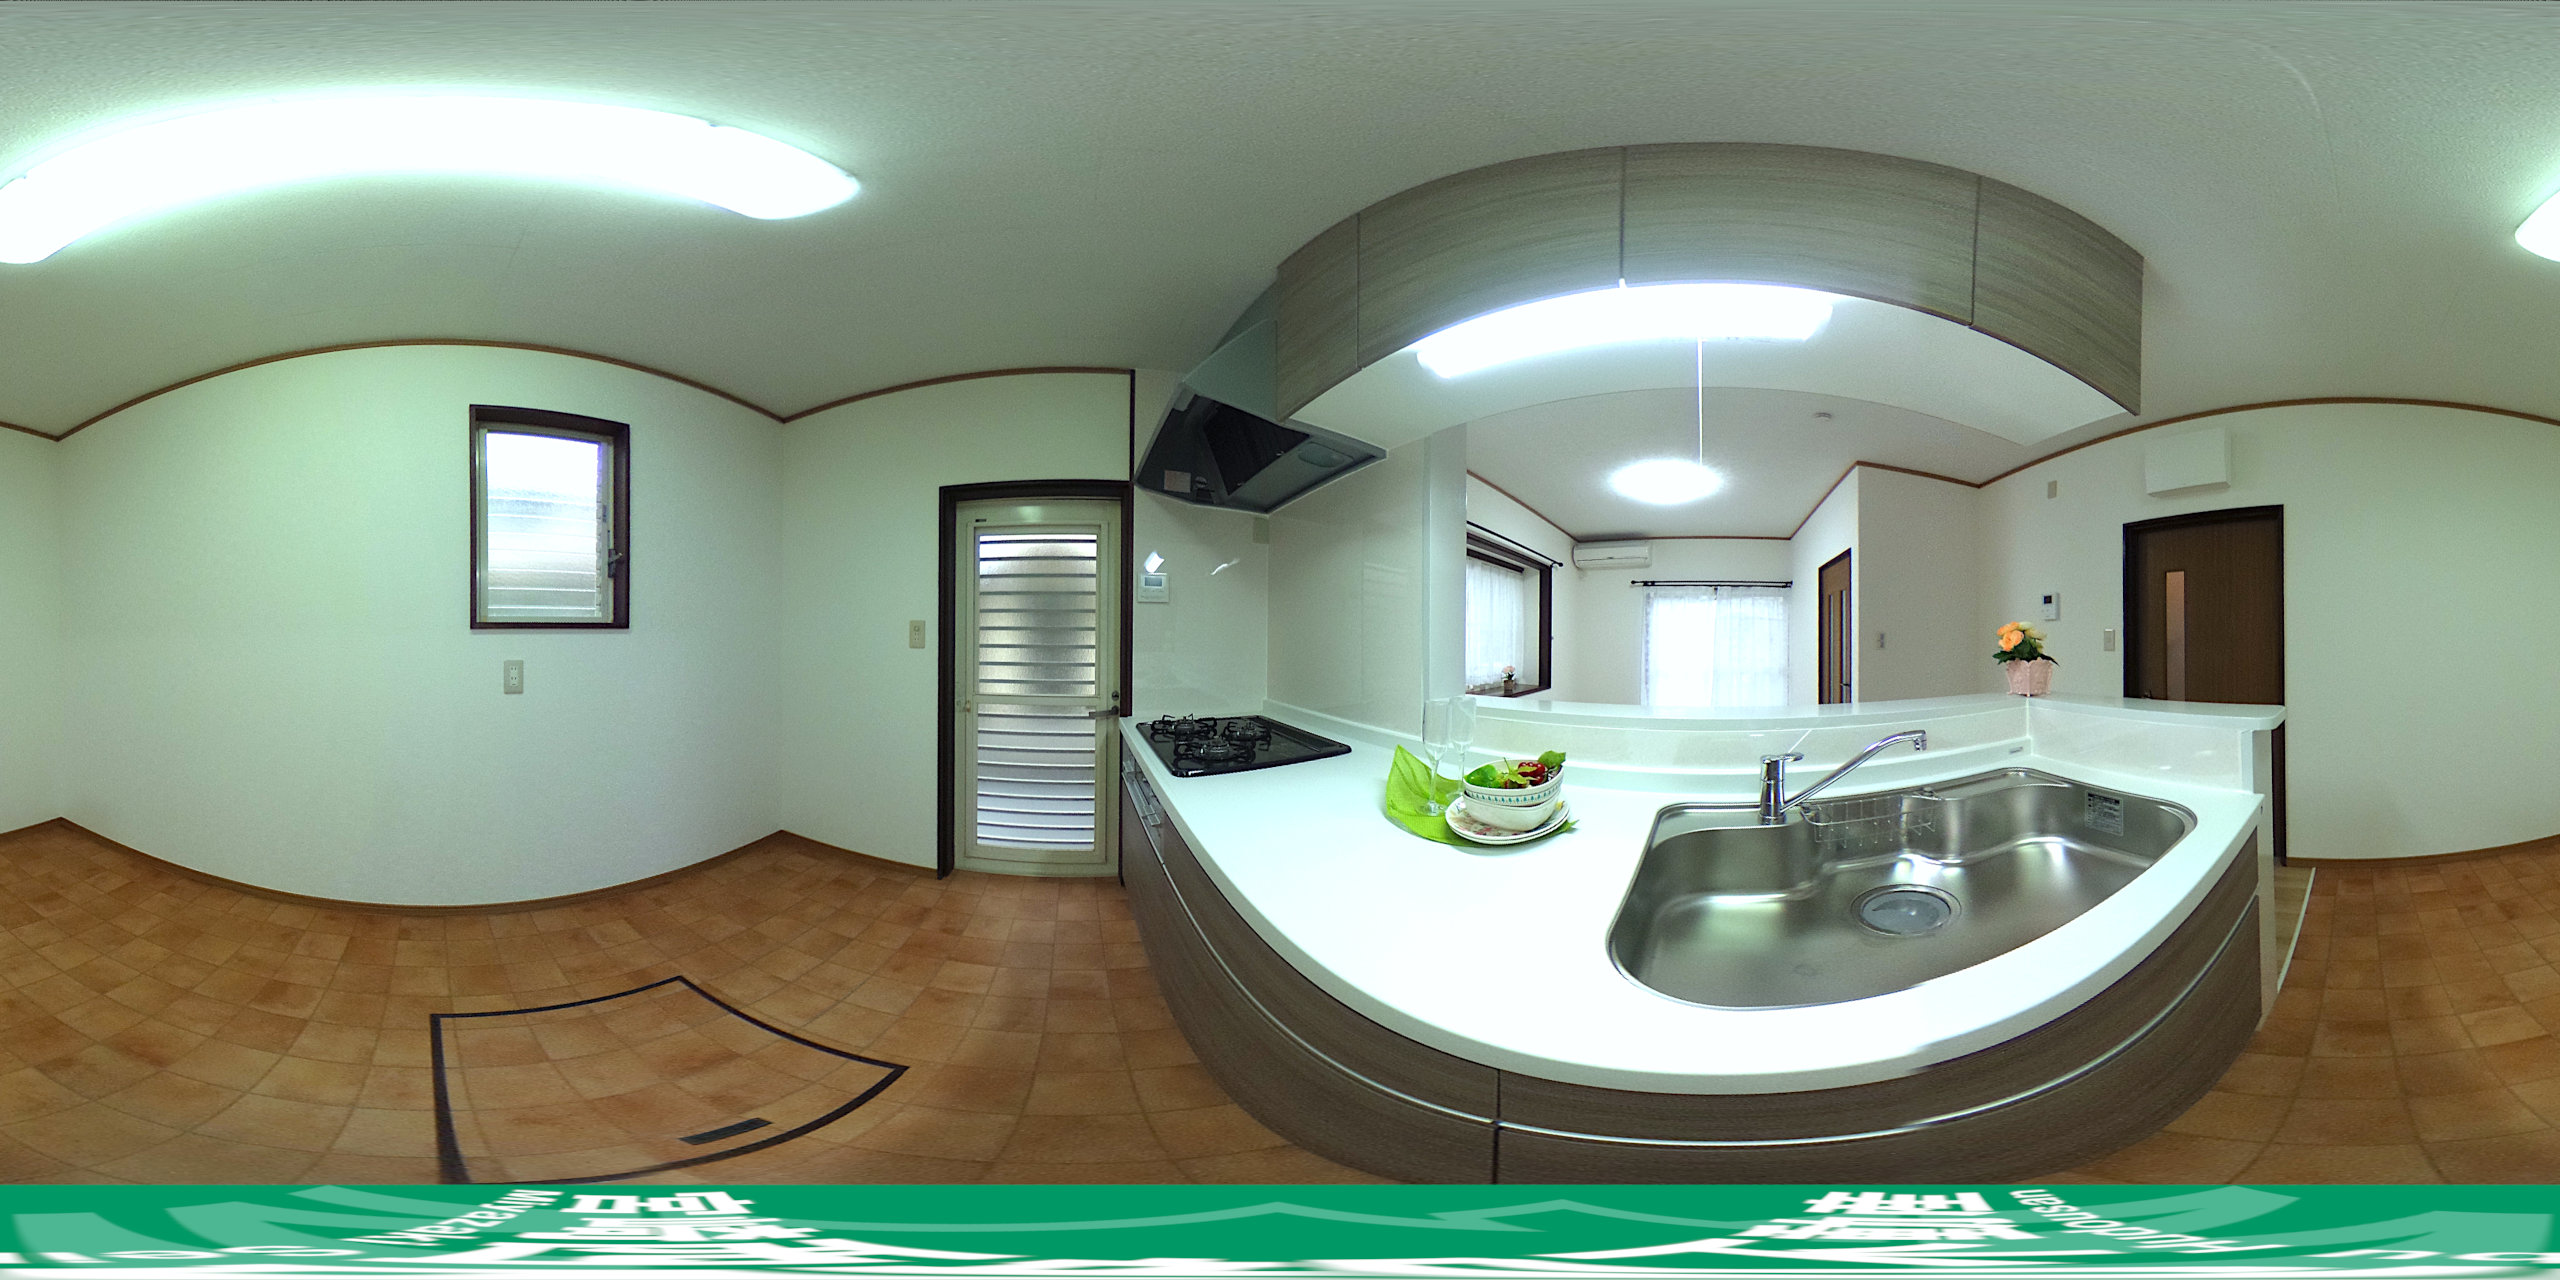 【キッチン】360度パノラマビュー。マウスやタッチ操作で全方位を自由に見渡せます。